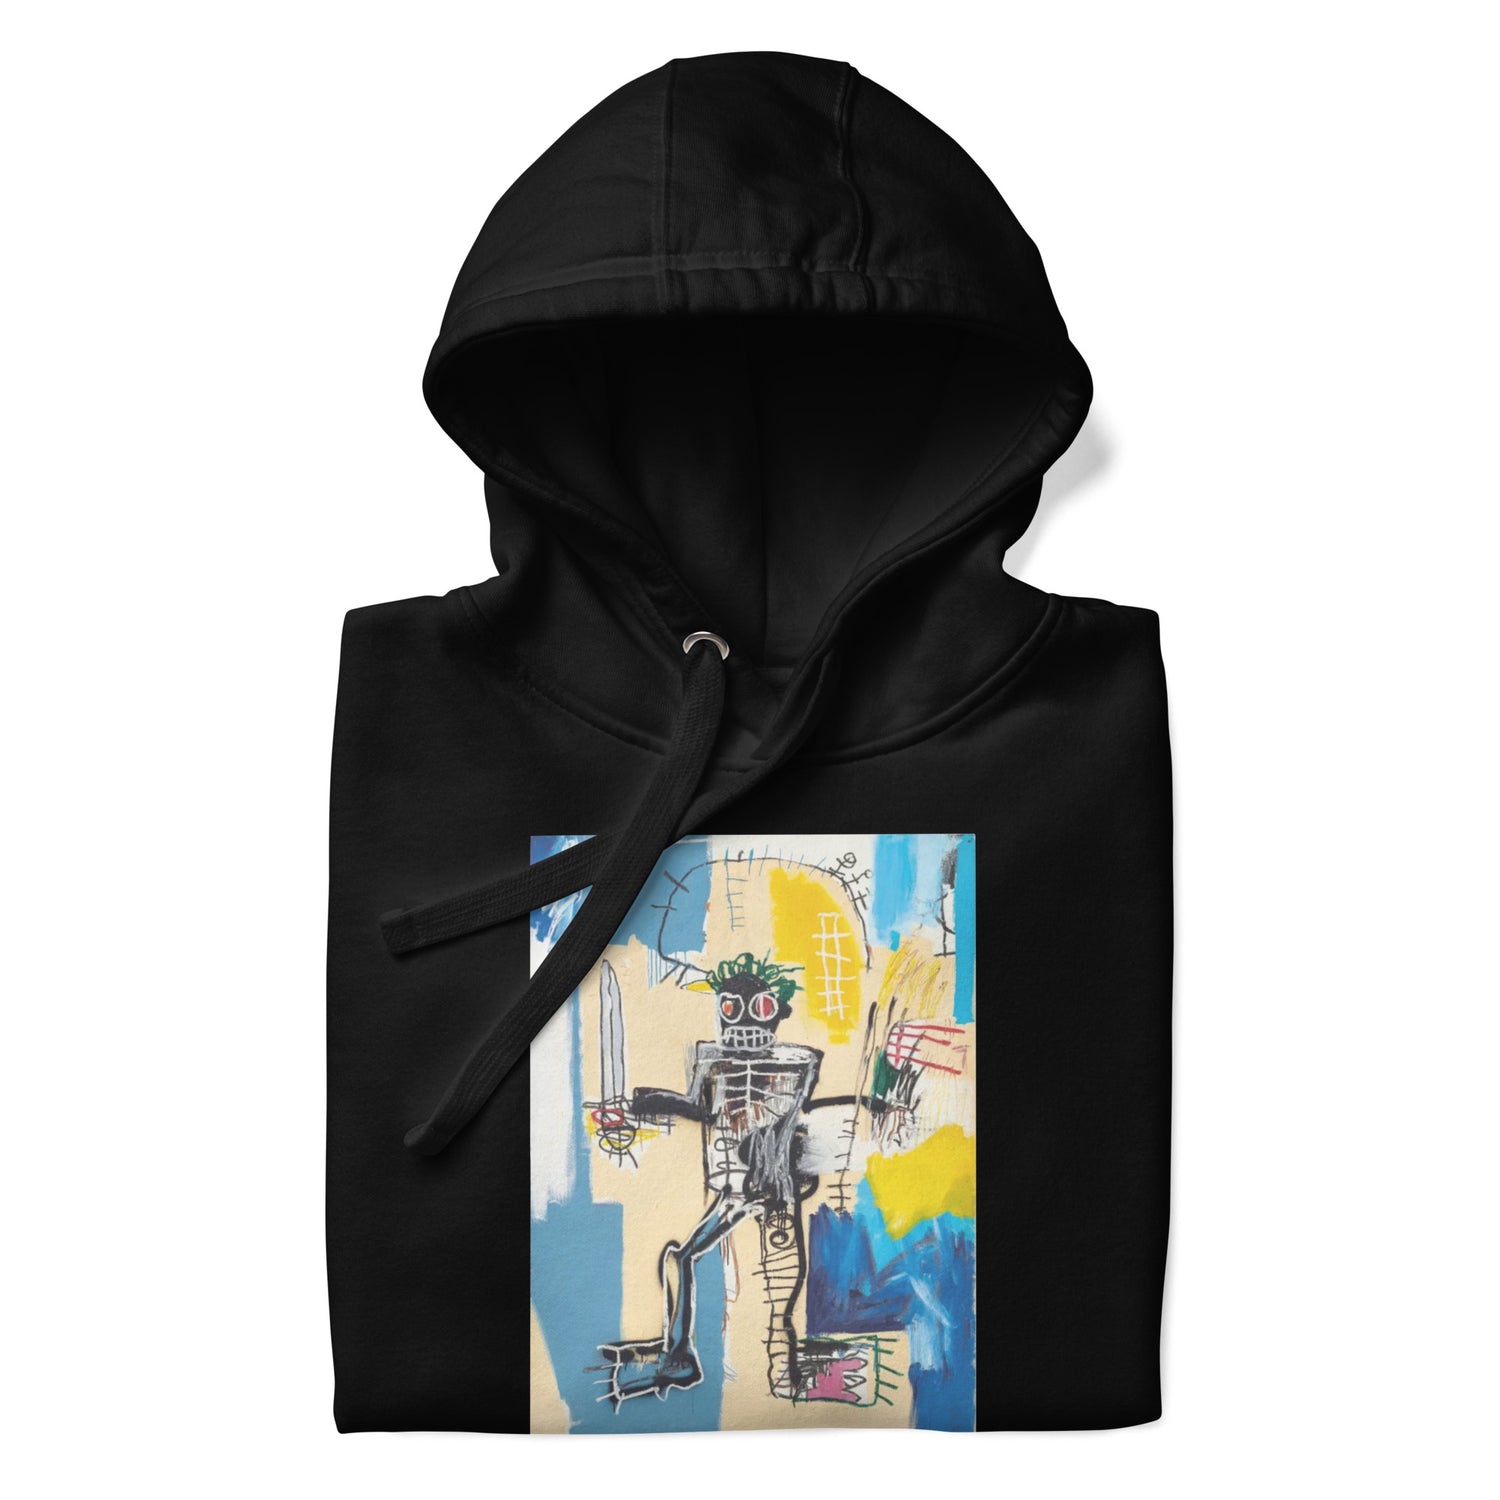 Jean-Michel Basquiat "Warrior" Artwork Printed Premium Streetwear Sweatshirt Hoodie Black